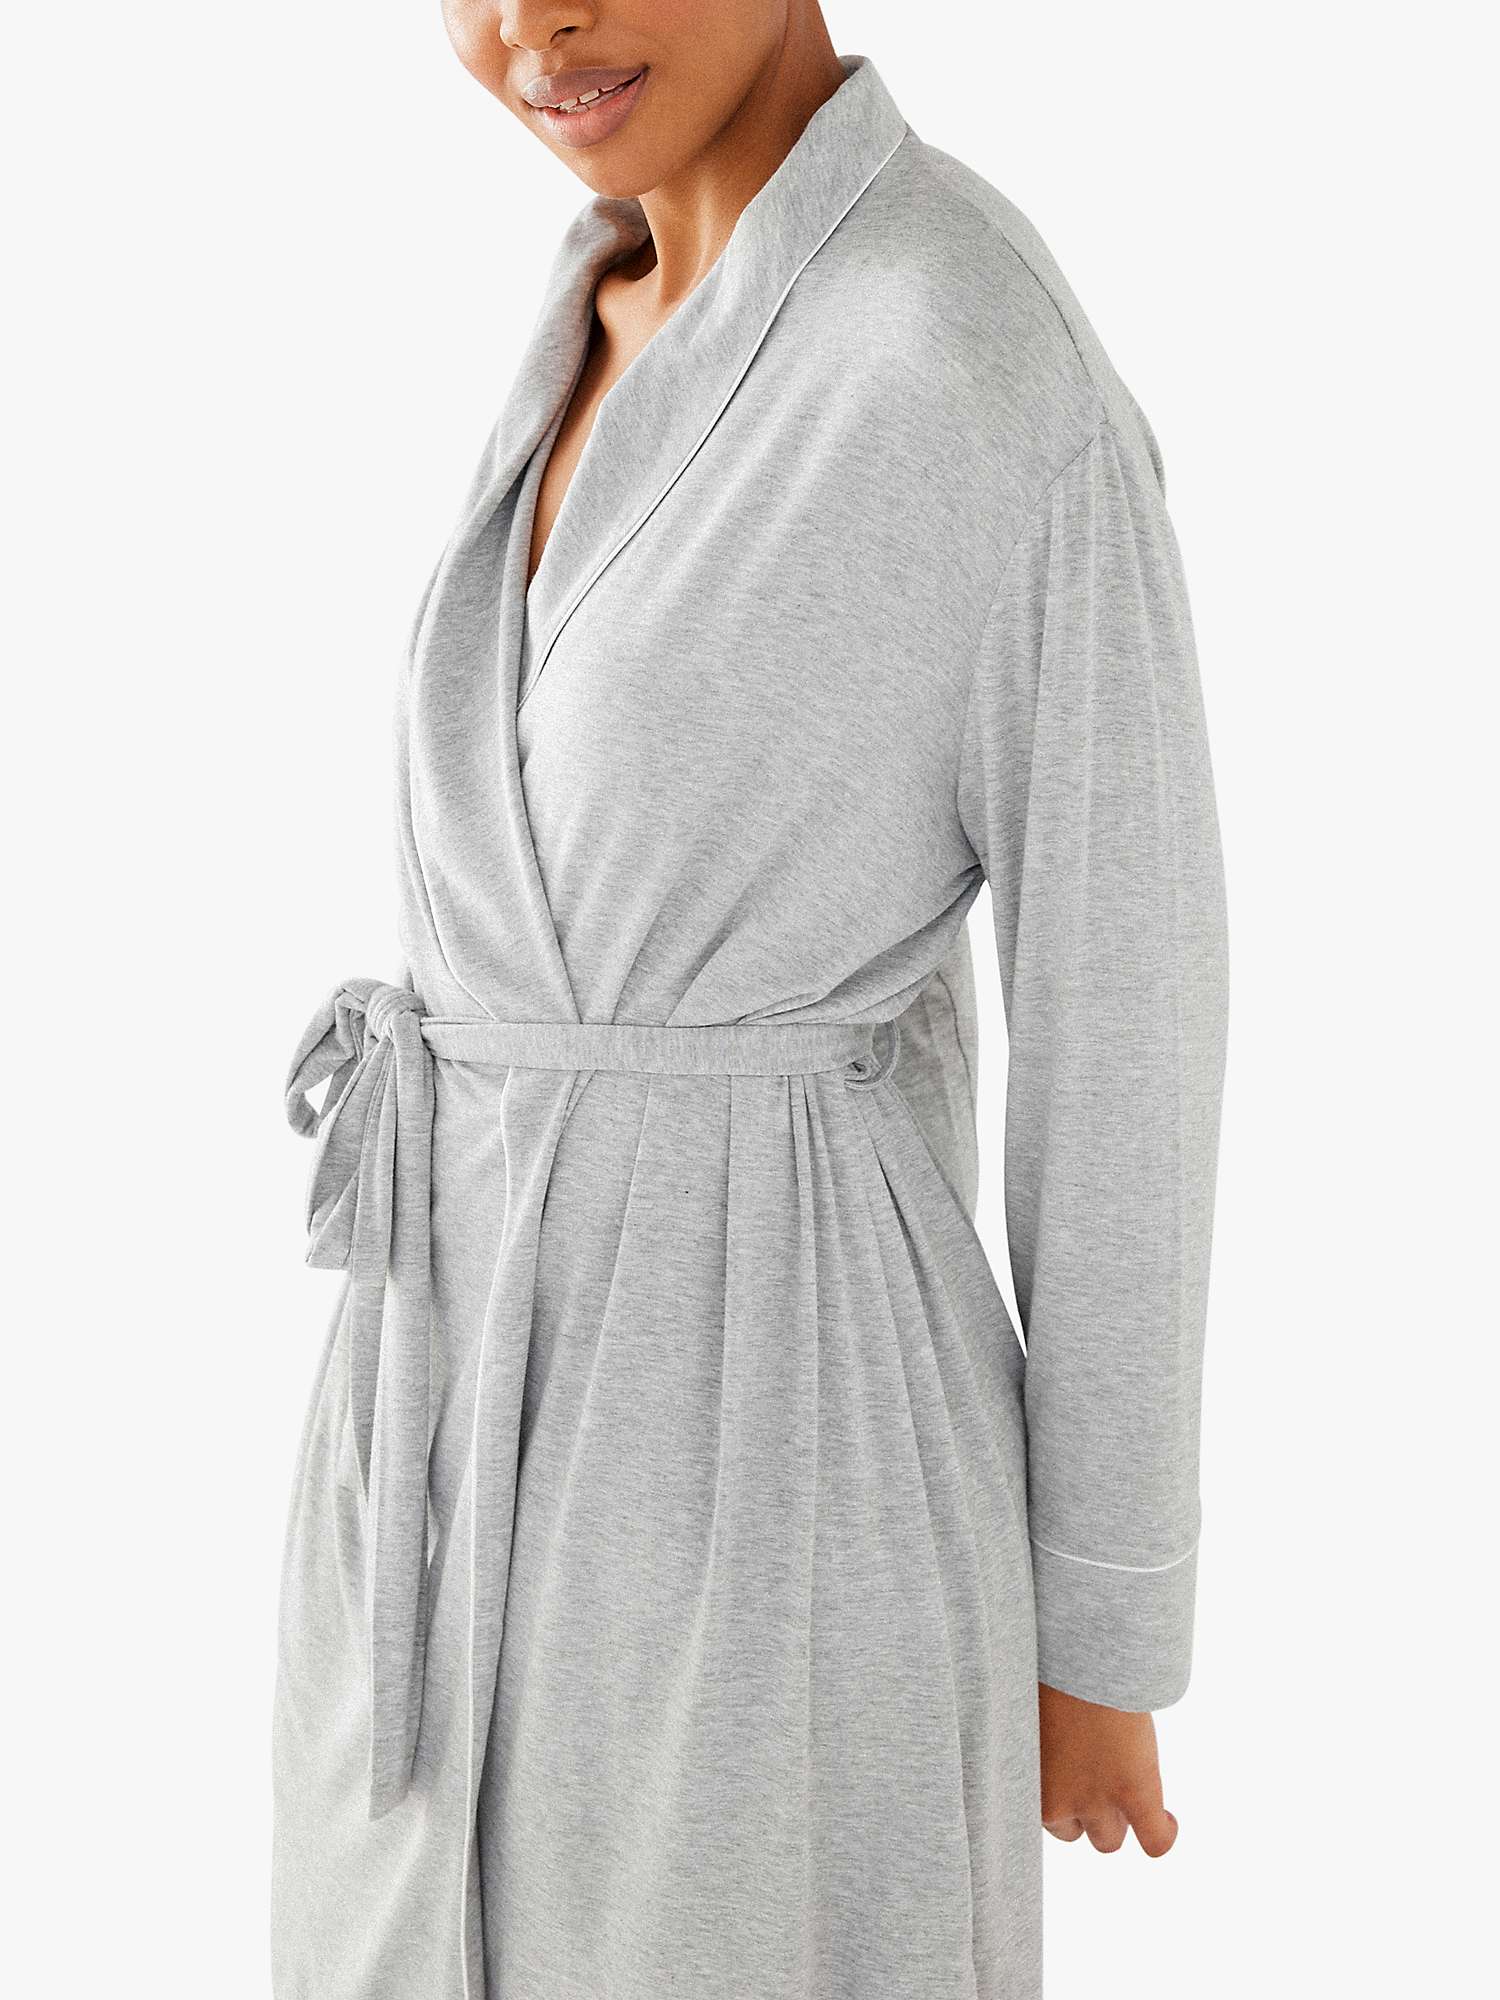 Buy Chelsea Peers Modal Dressing Gown Online at johnlewis.com